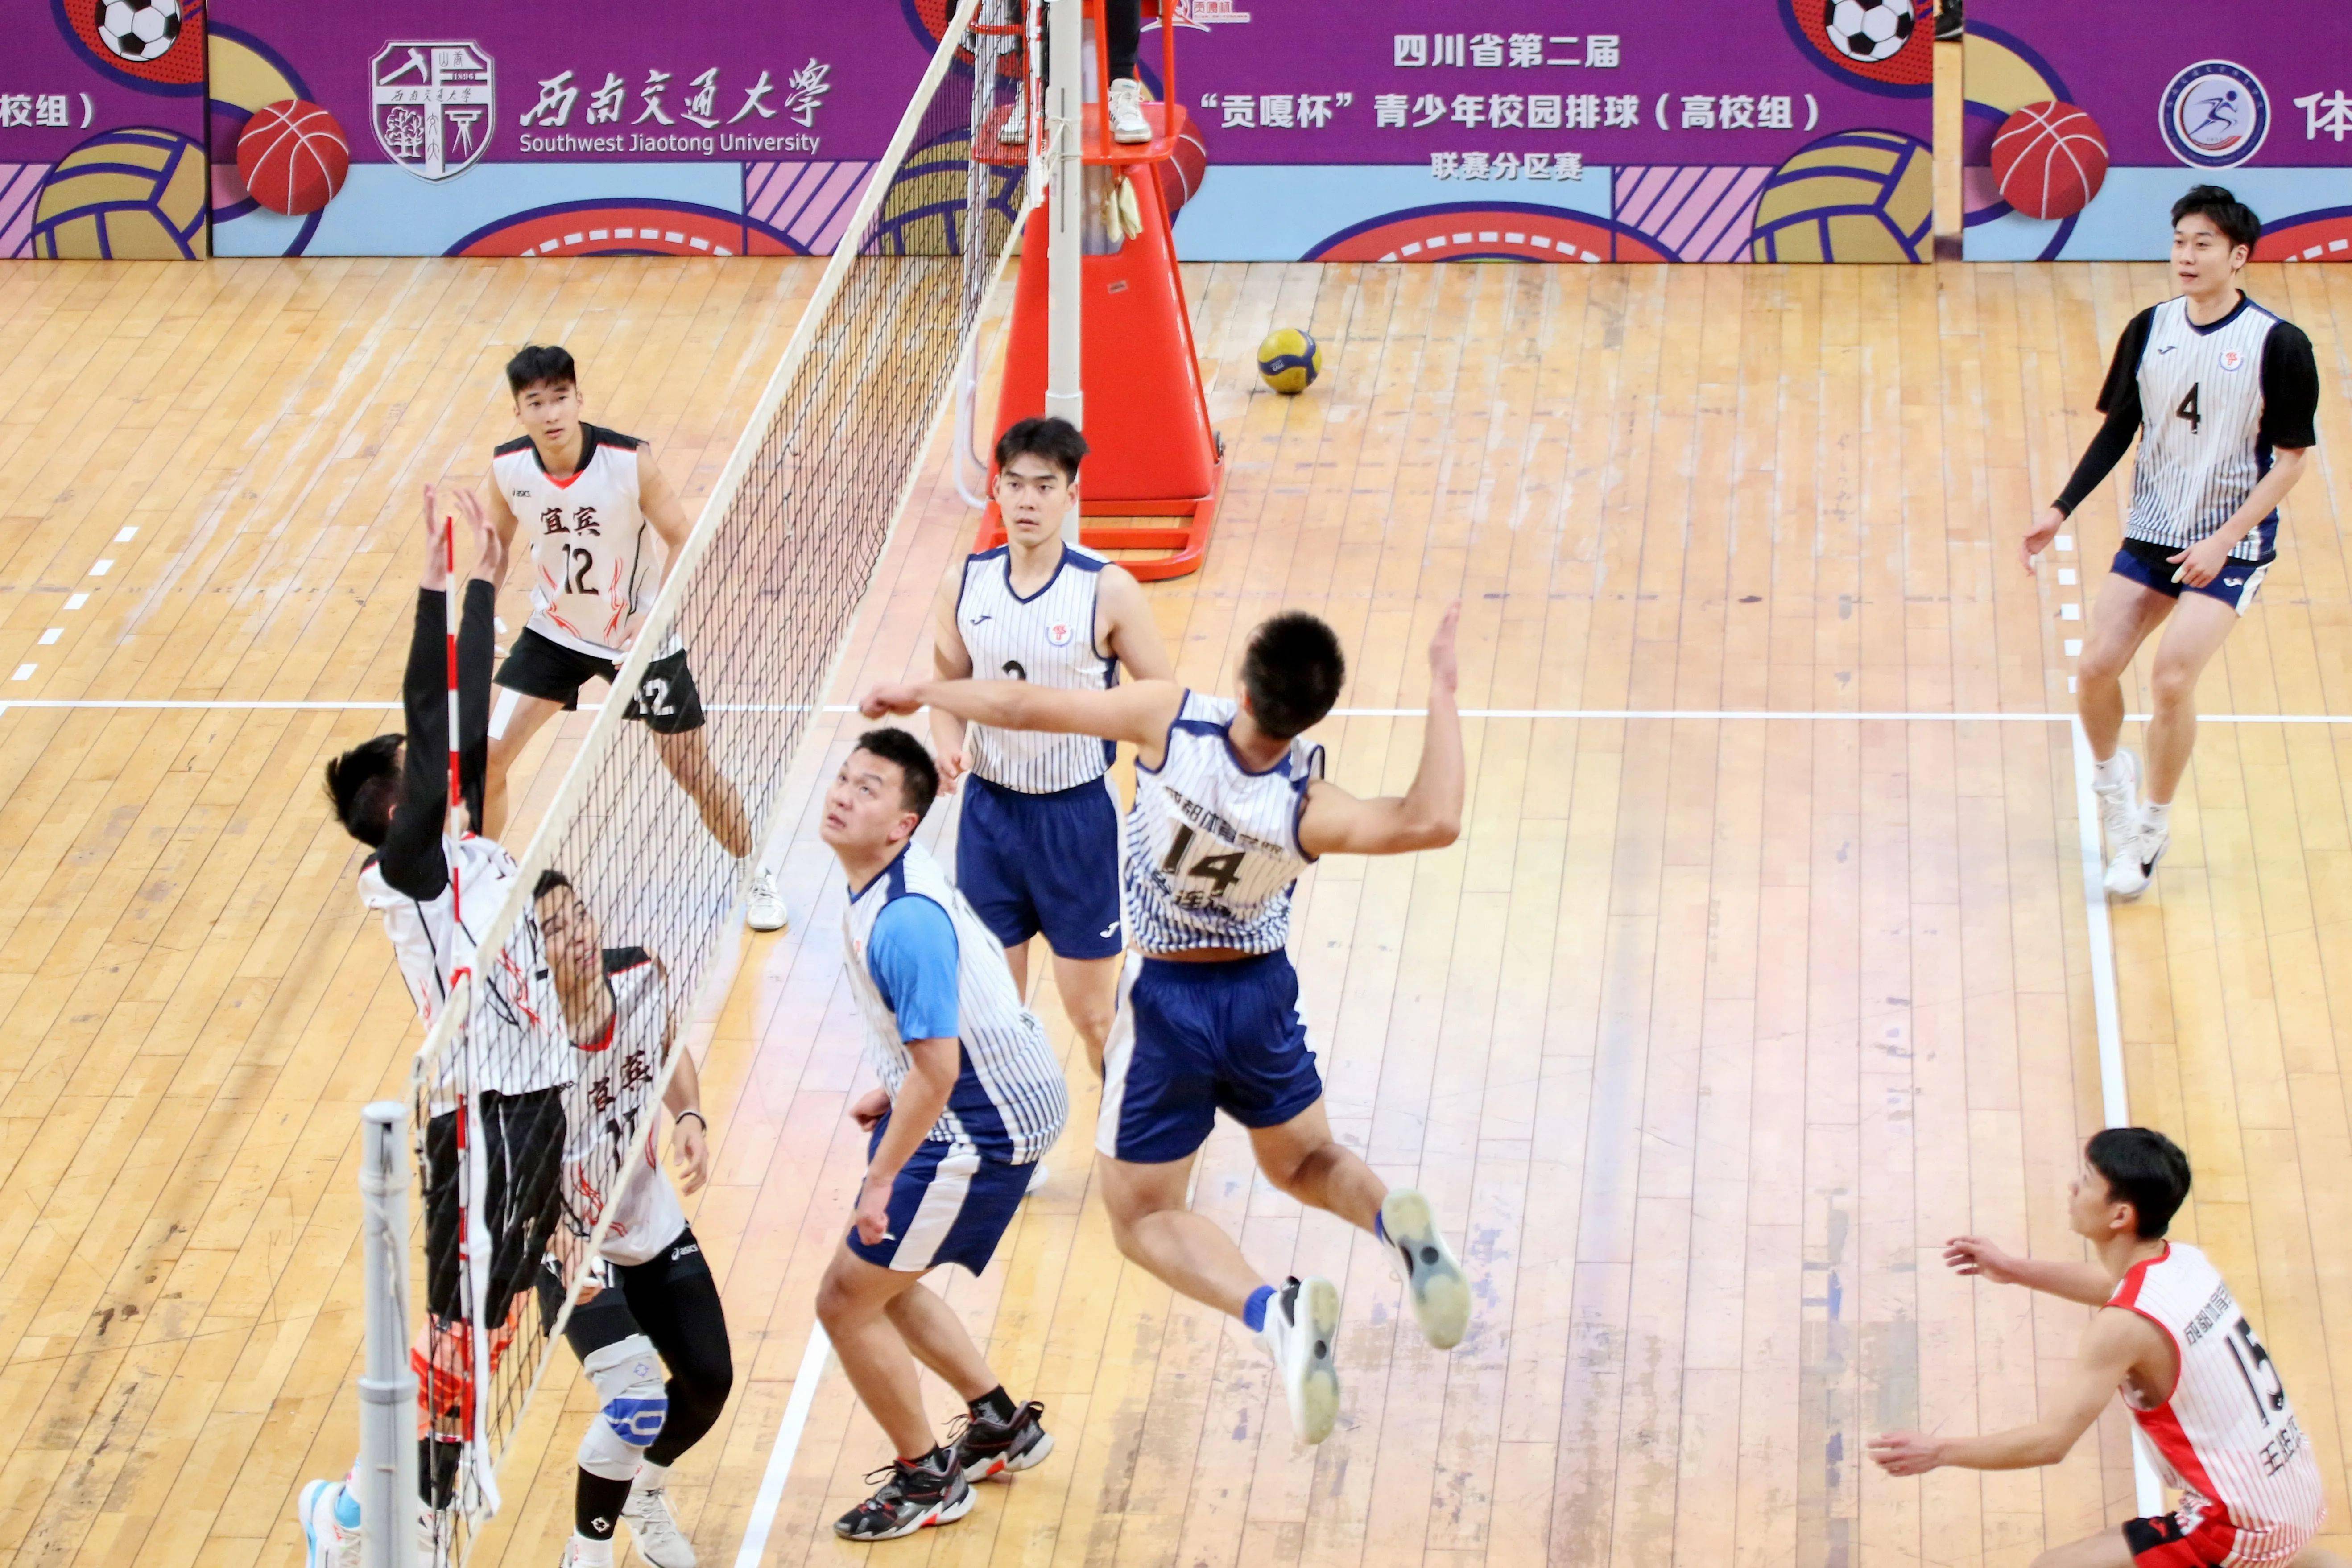 随着比赛结束的哨声吹响,四川省第二届"贡嘎杯"青少年校园排球联赛